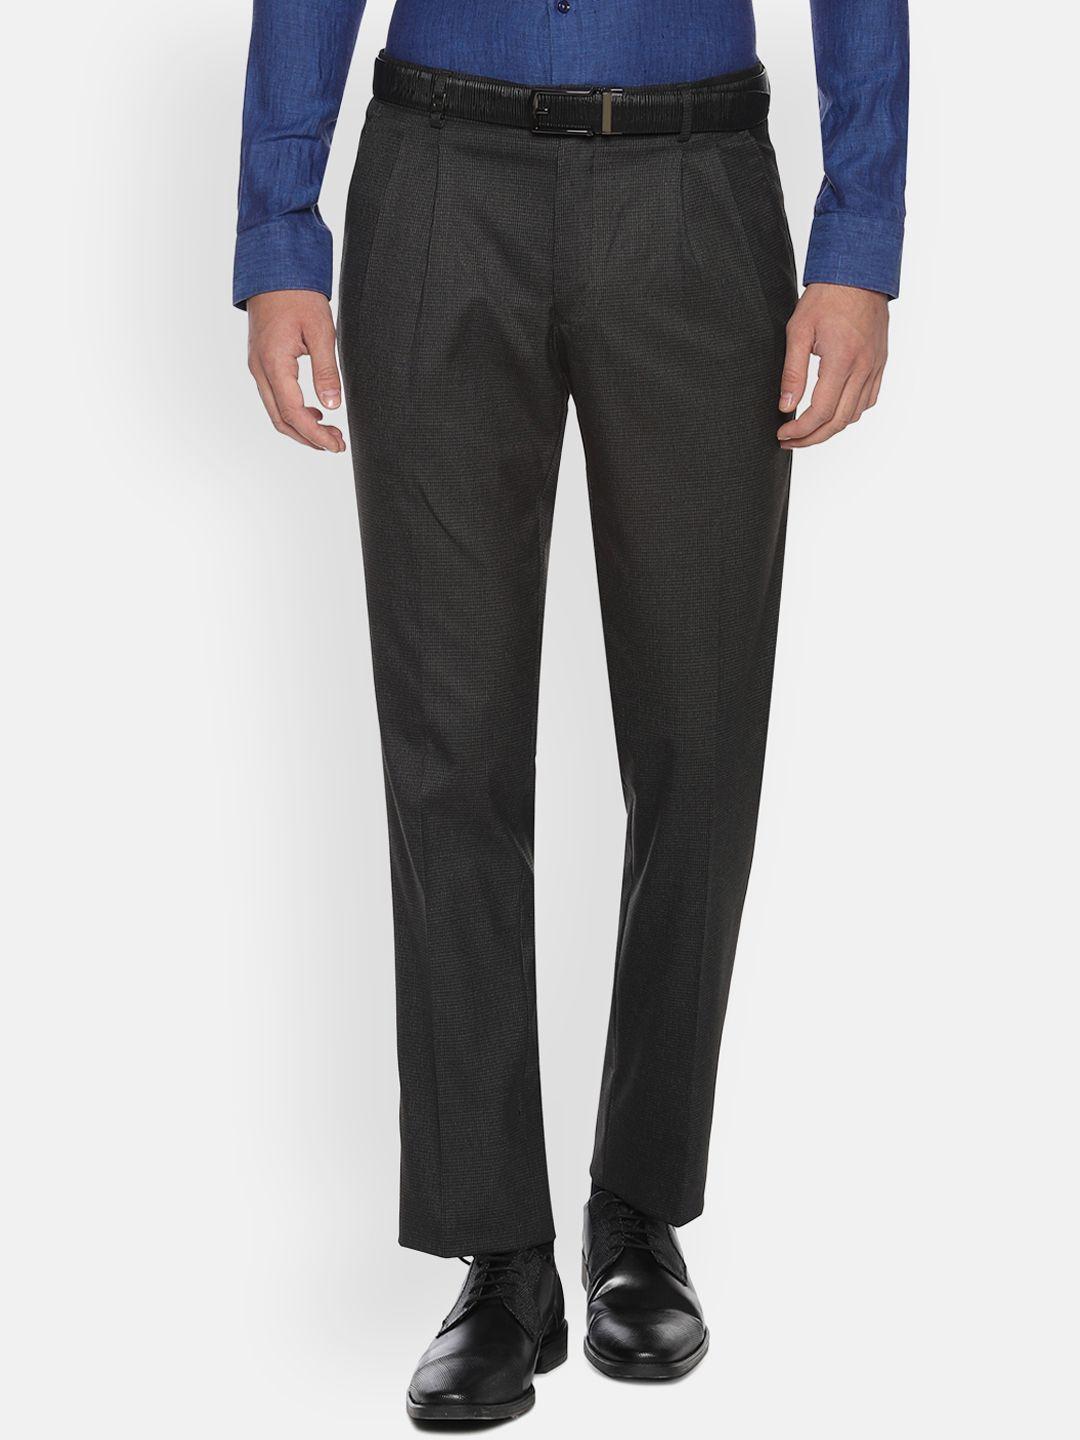 louis philippe men charcoal grey regular fit self design formal trousers